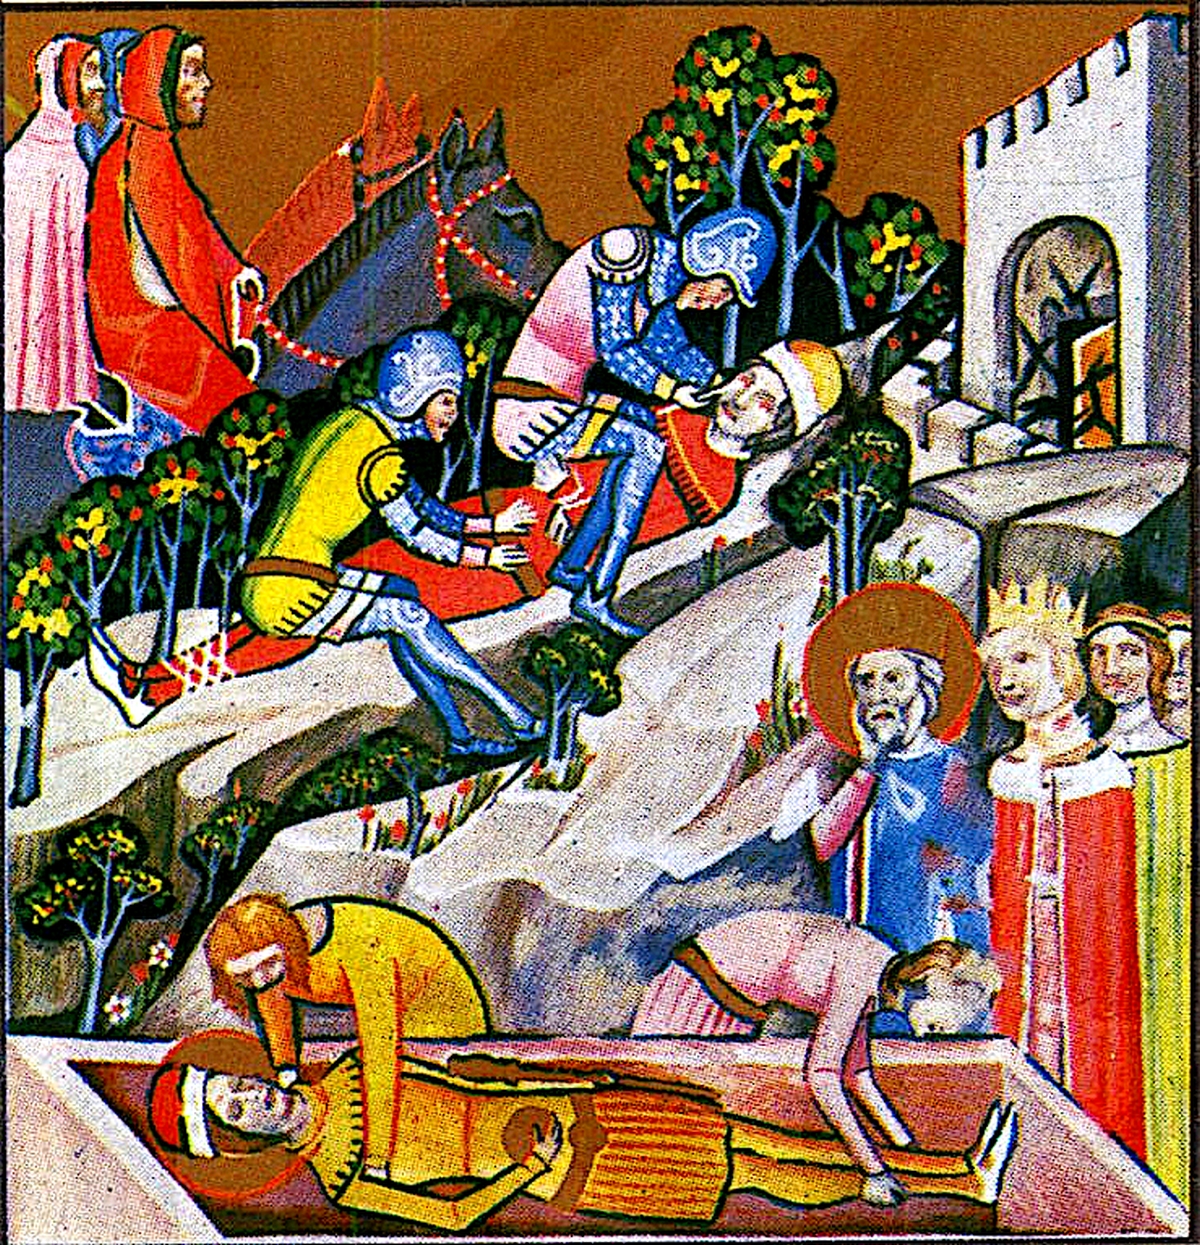 Szent Imre temetése és Vazul megvakítása a Képes Krónikában.